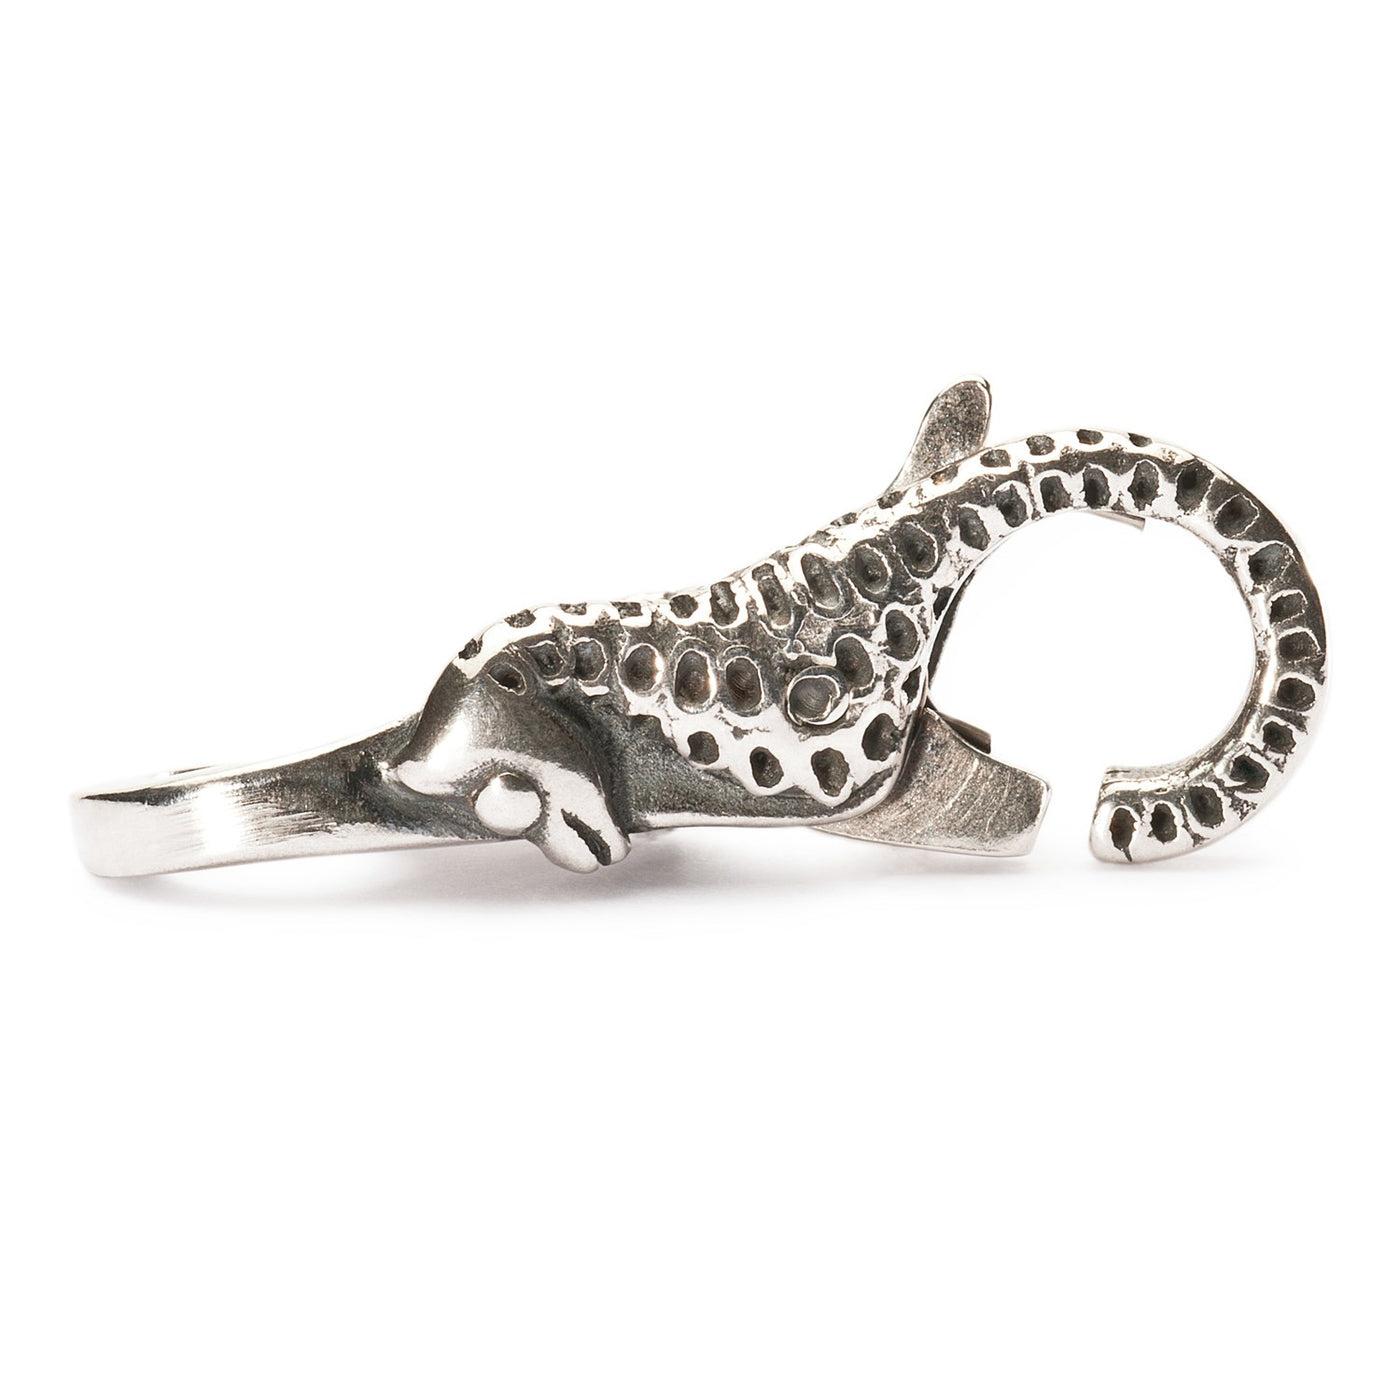 Seahorse silver clasp.